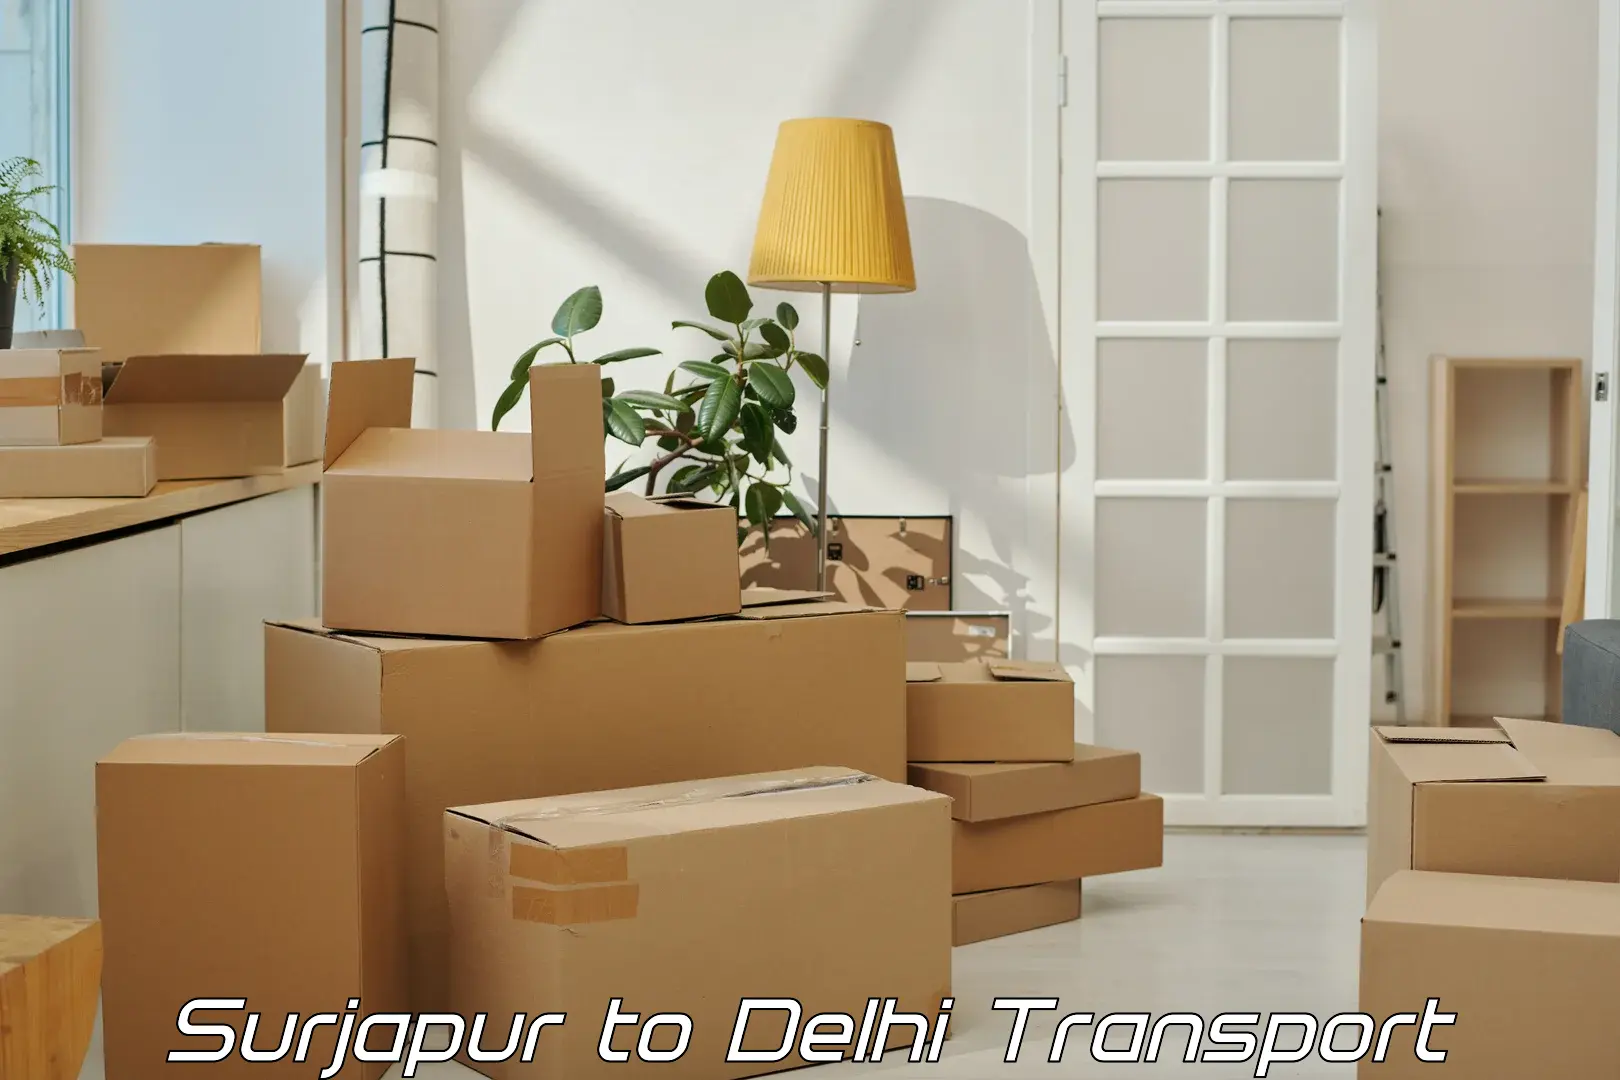 Delivery service Surjapur to Sarojini Nagar